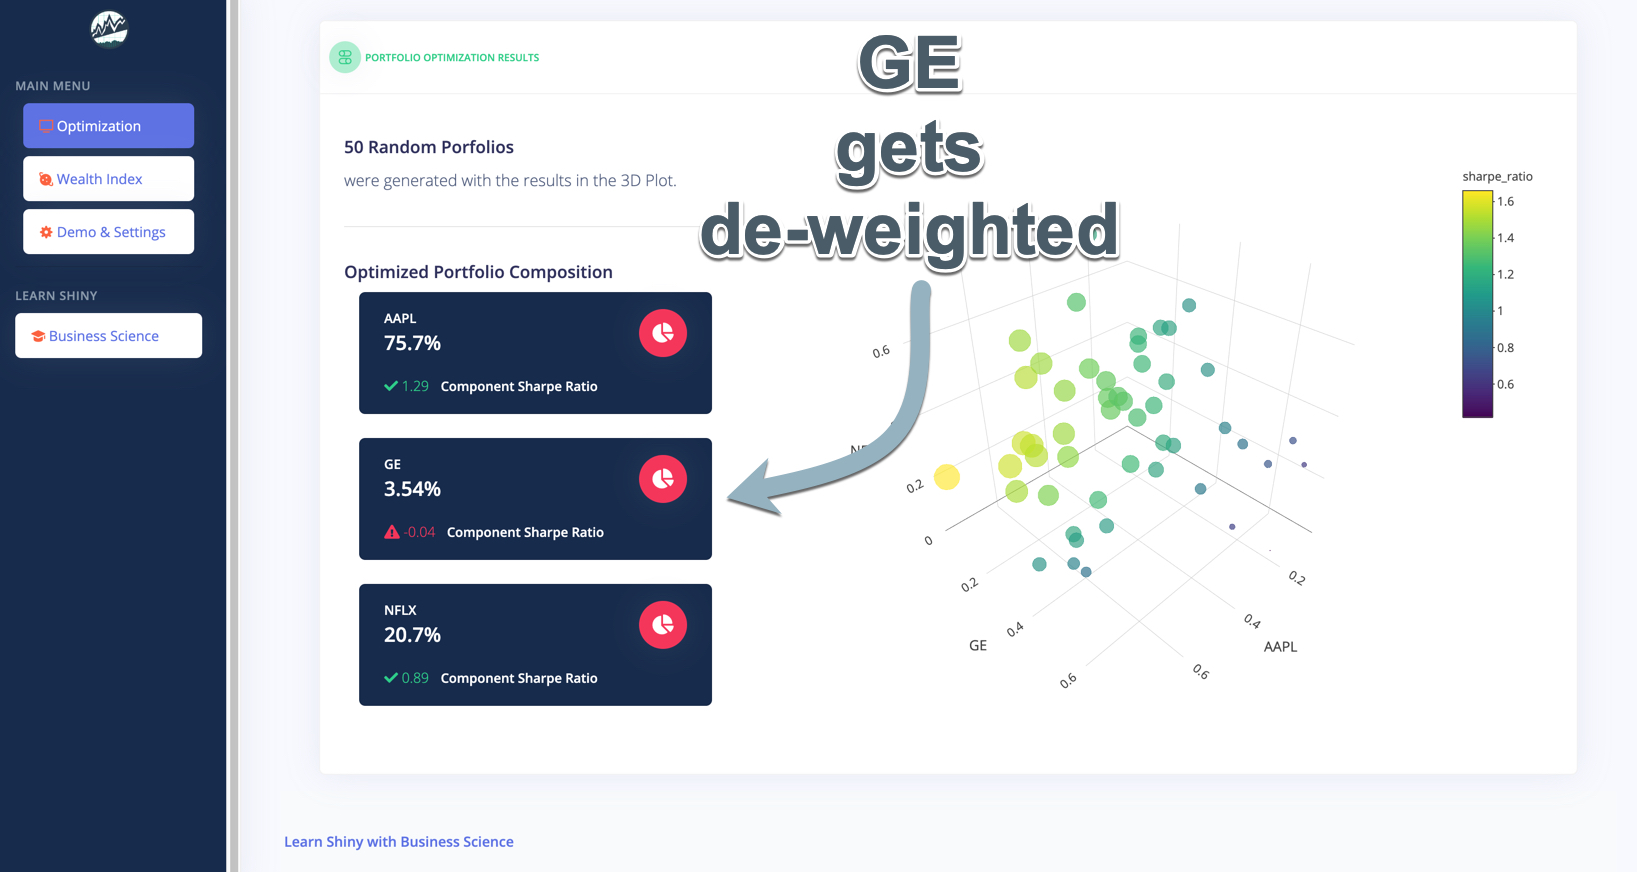 GE gets De-Weighted